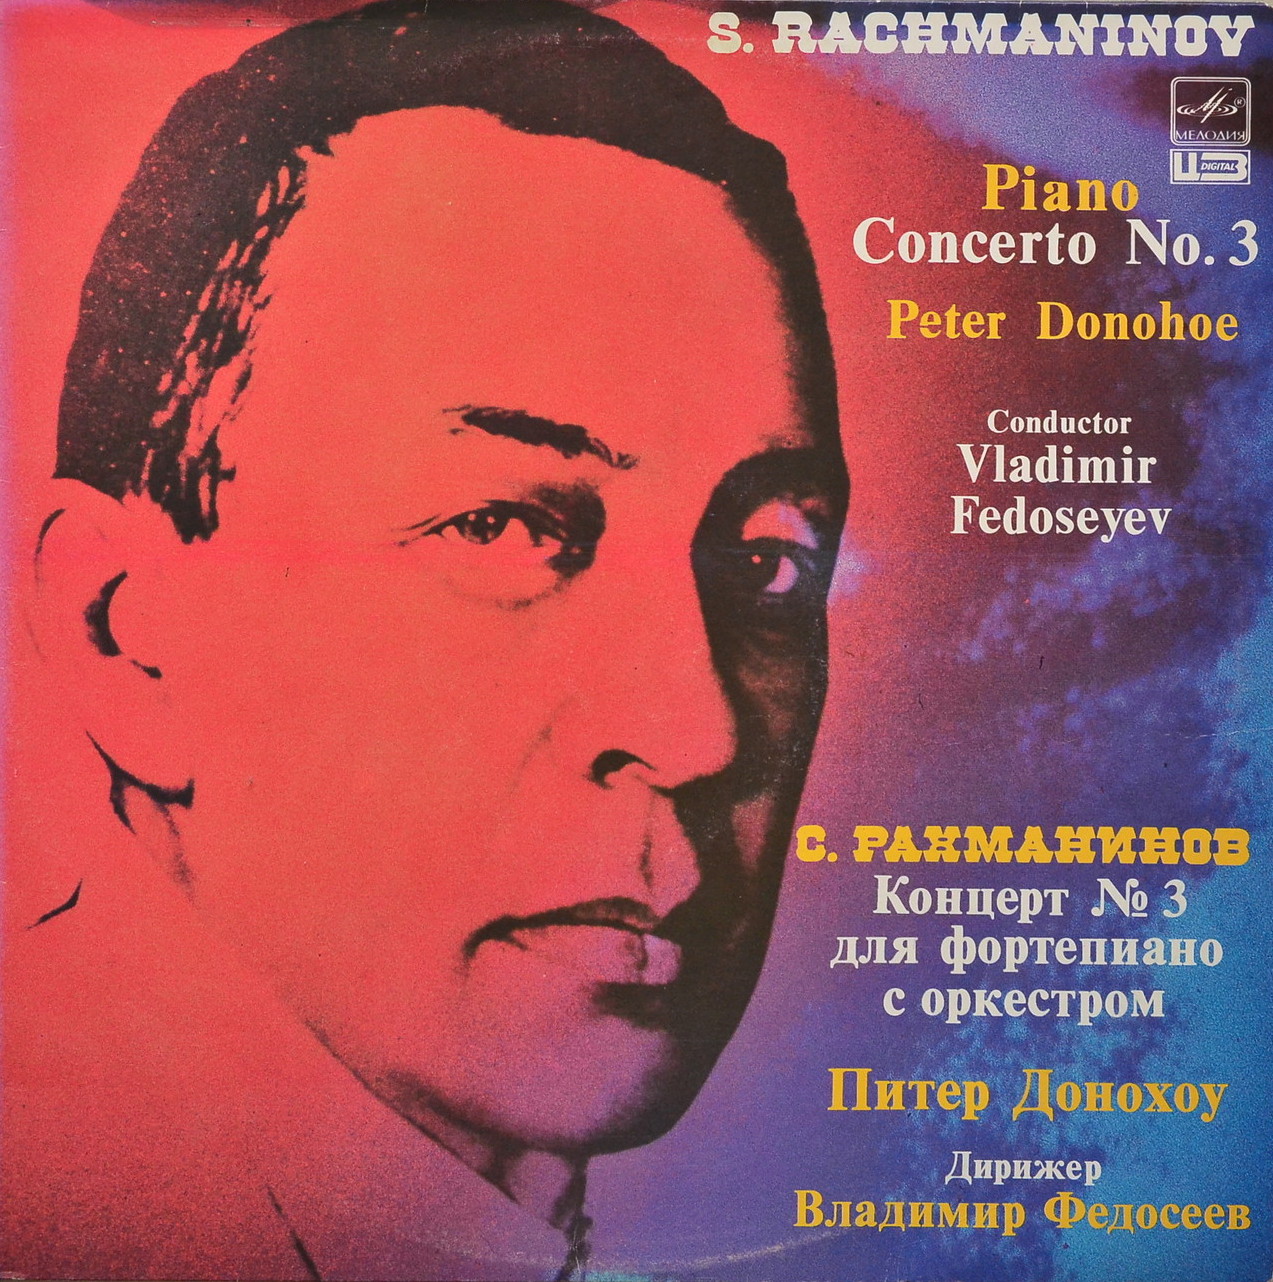 С. РАХМАНИНОВ (1873-1943): Концерт № 3 для ф-но с оркестром (П. Донохоу, В. Федосеев)